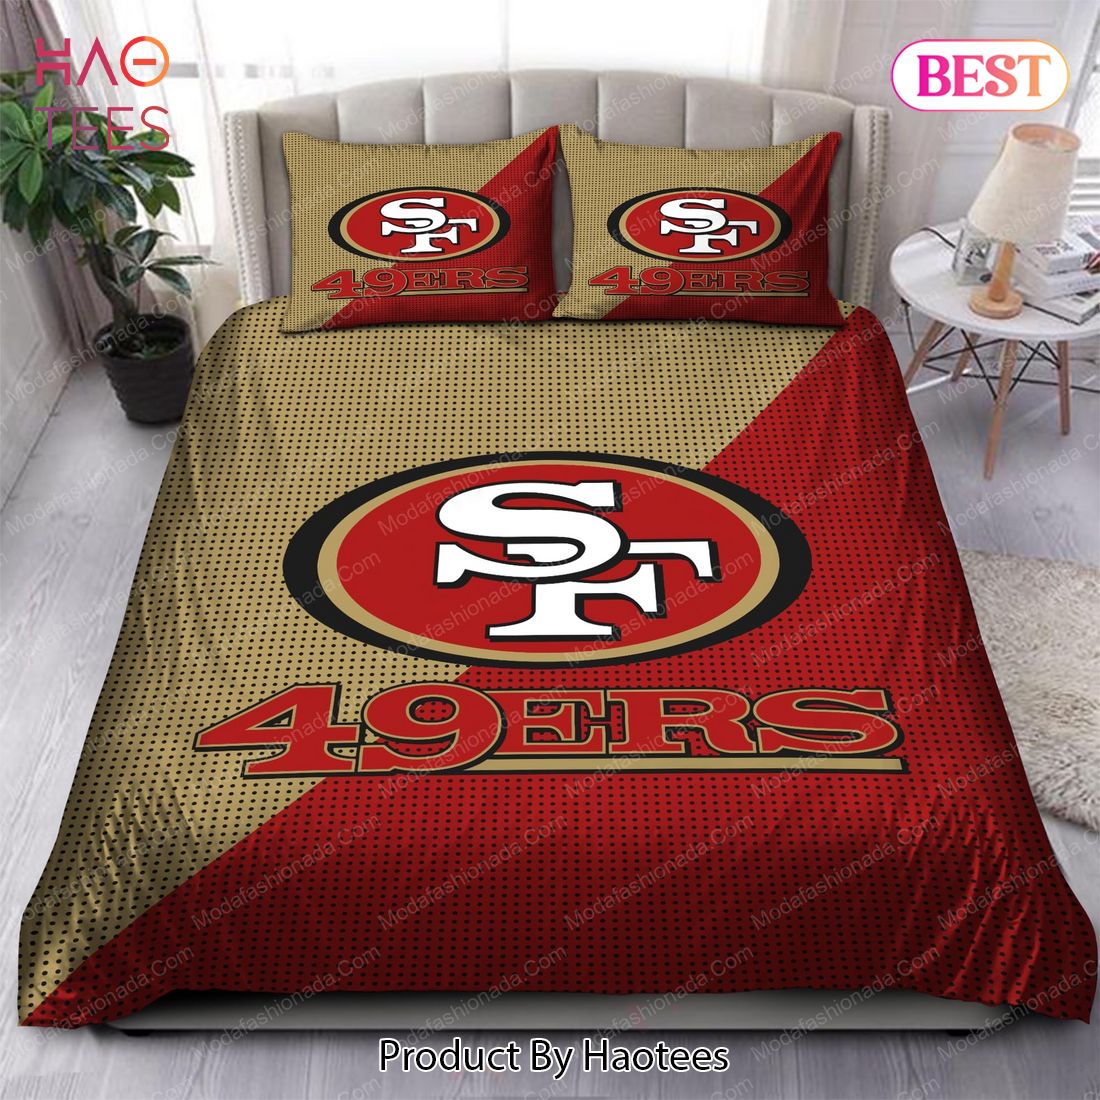 Buy San Francisco 49ers Logo Bedding Sets Bed Sets, Bedroom Sets, Comforter Sets, Duvet Cover, Bedspread